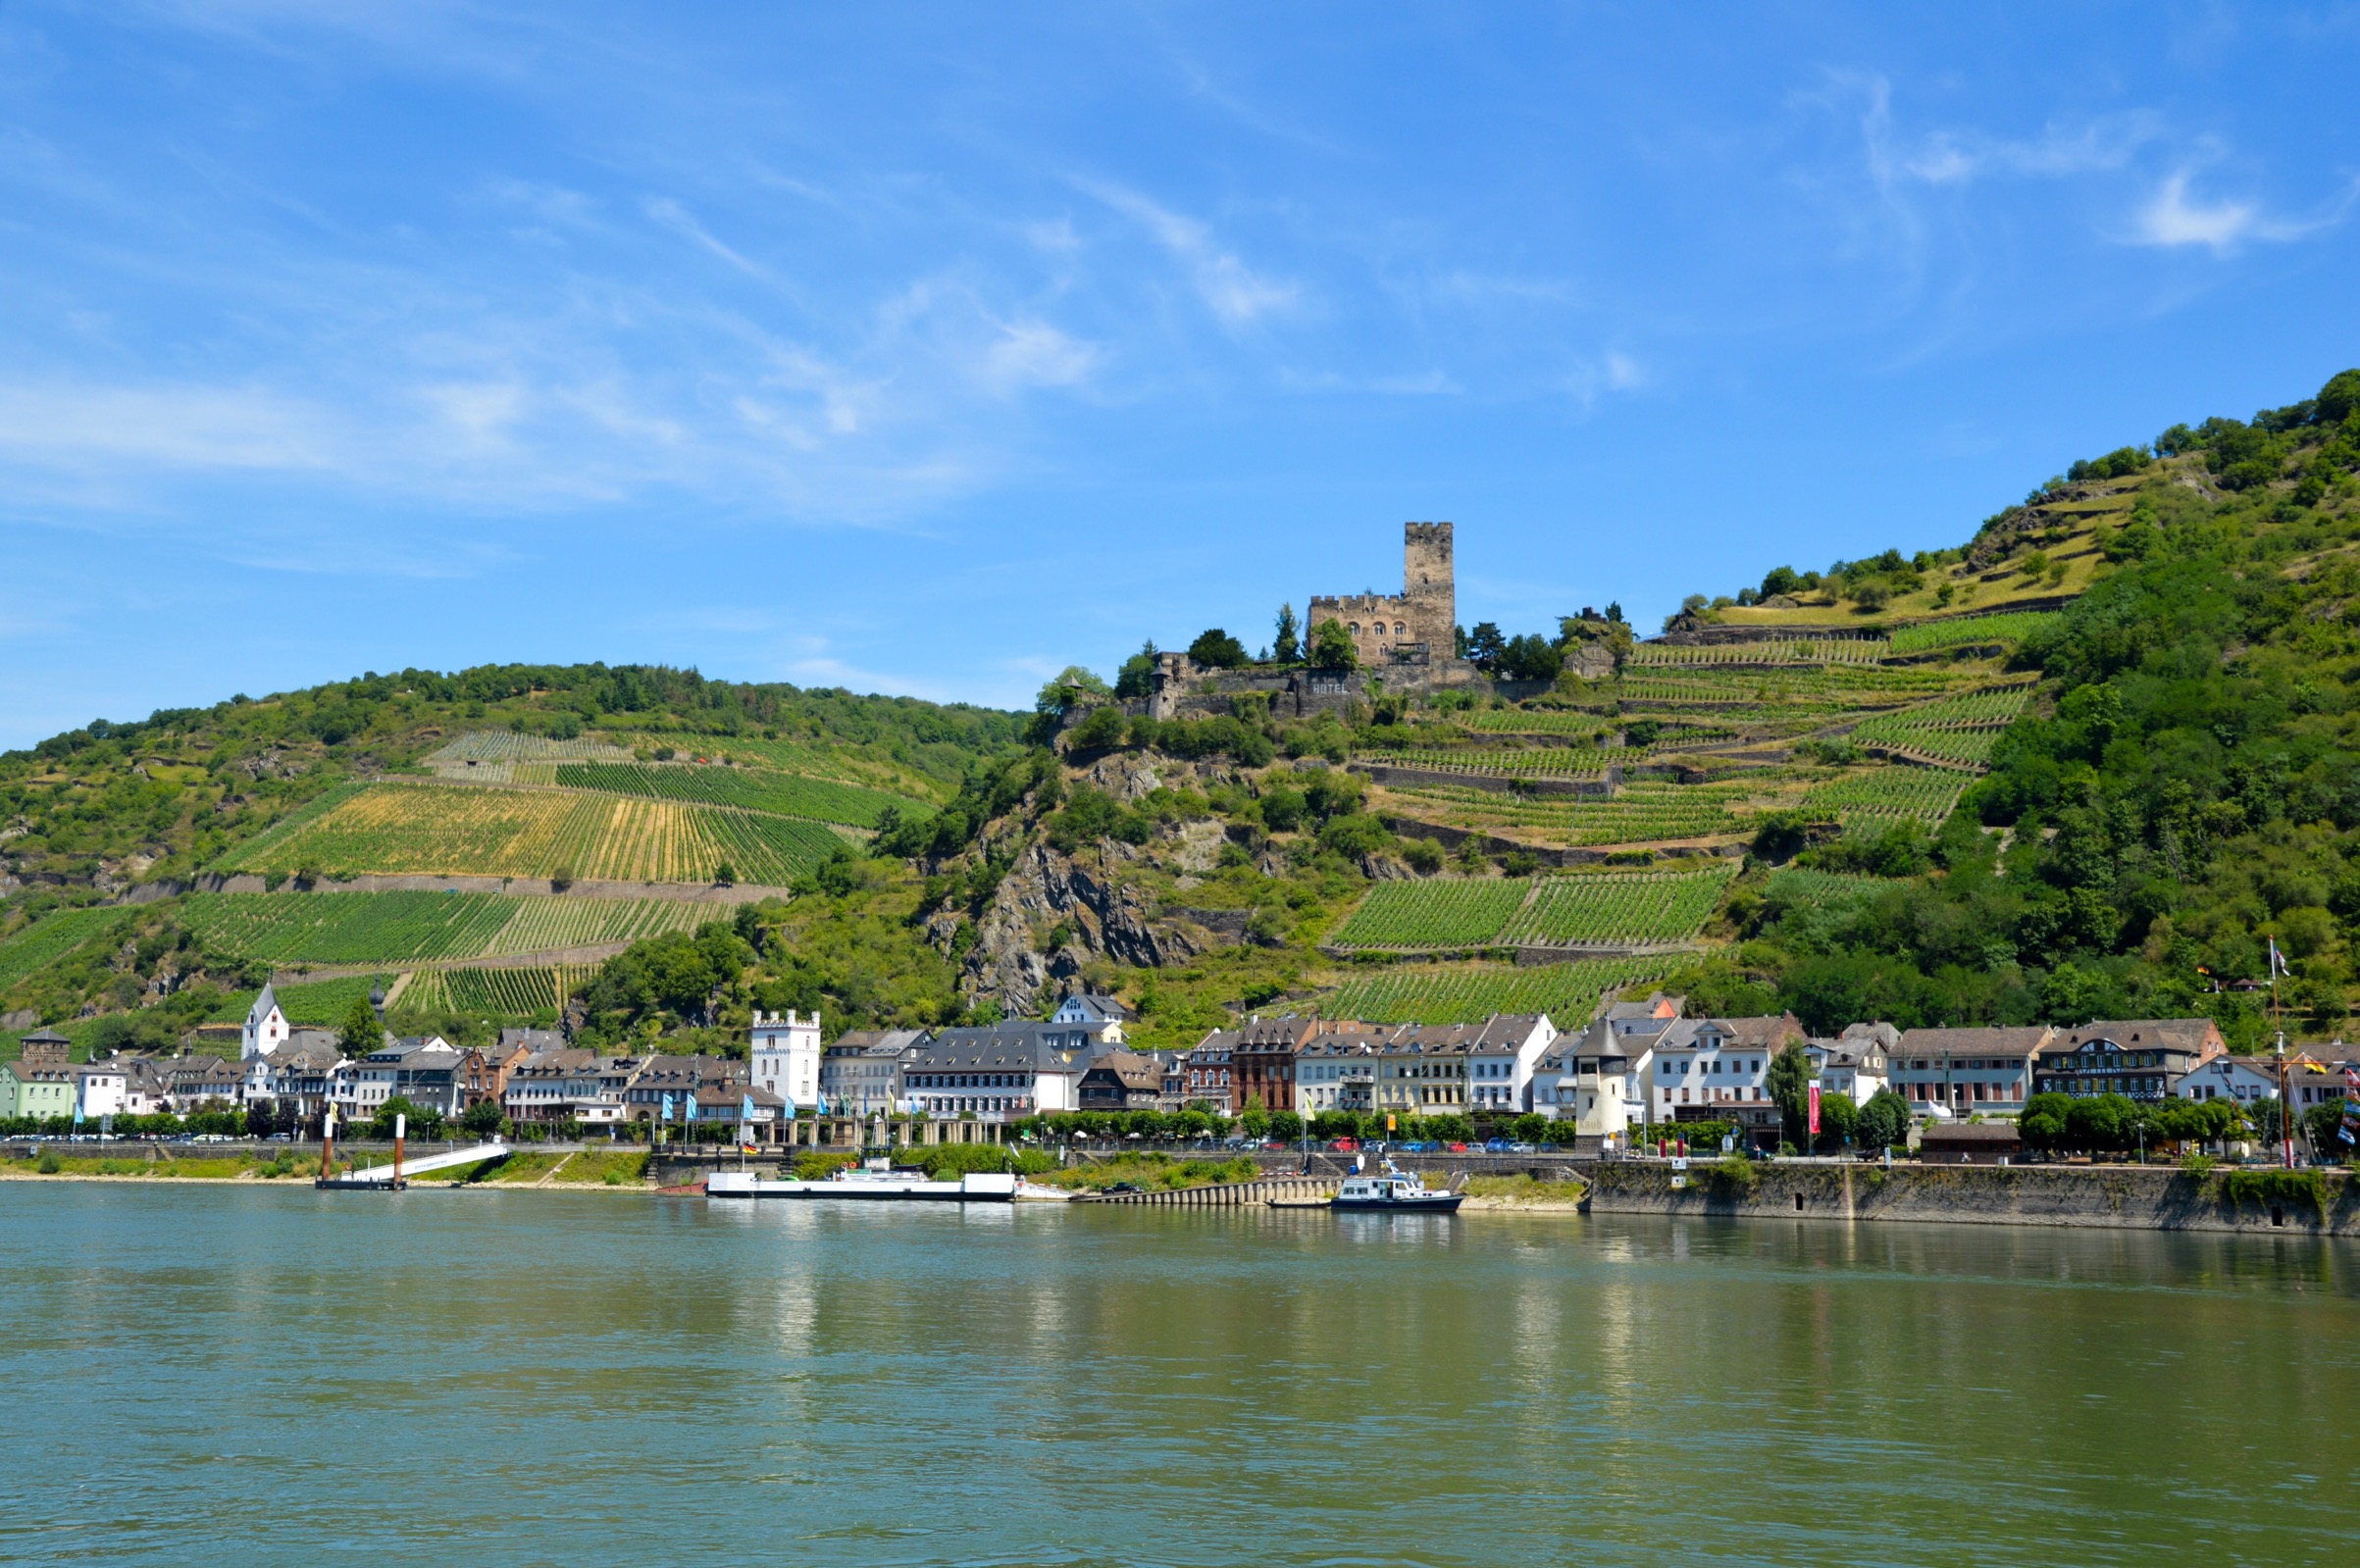 Rhine River ferry, Germany